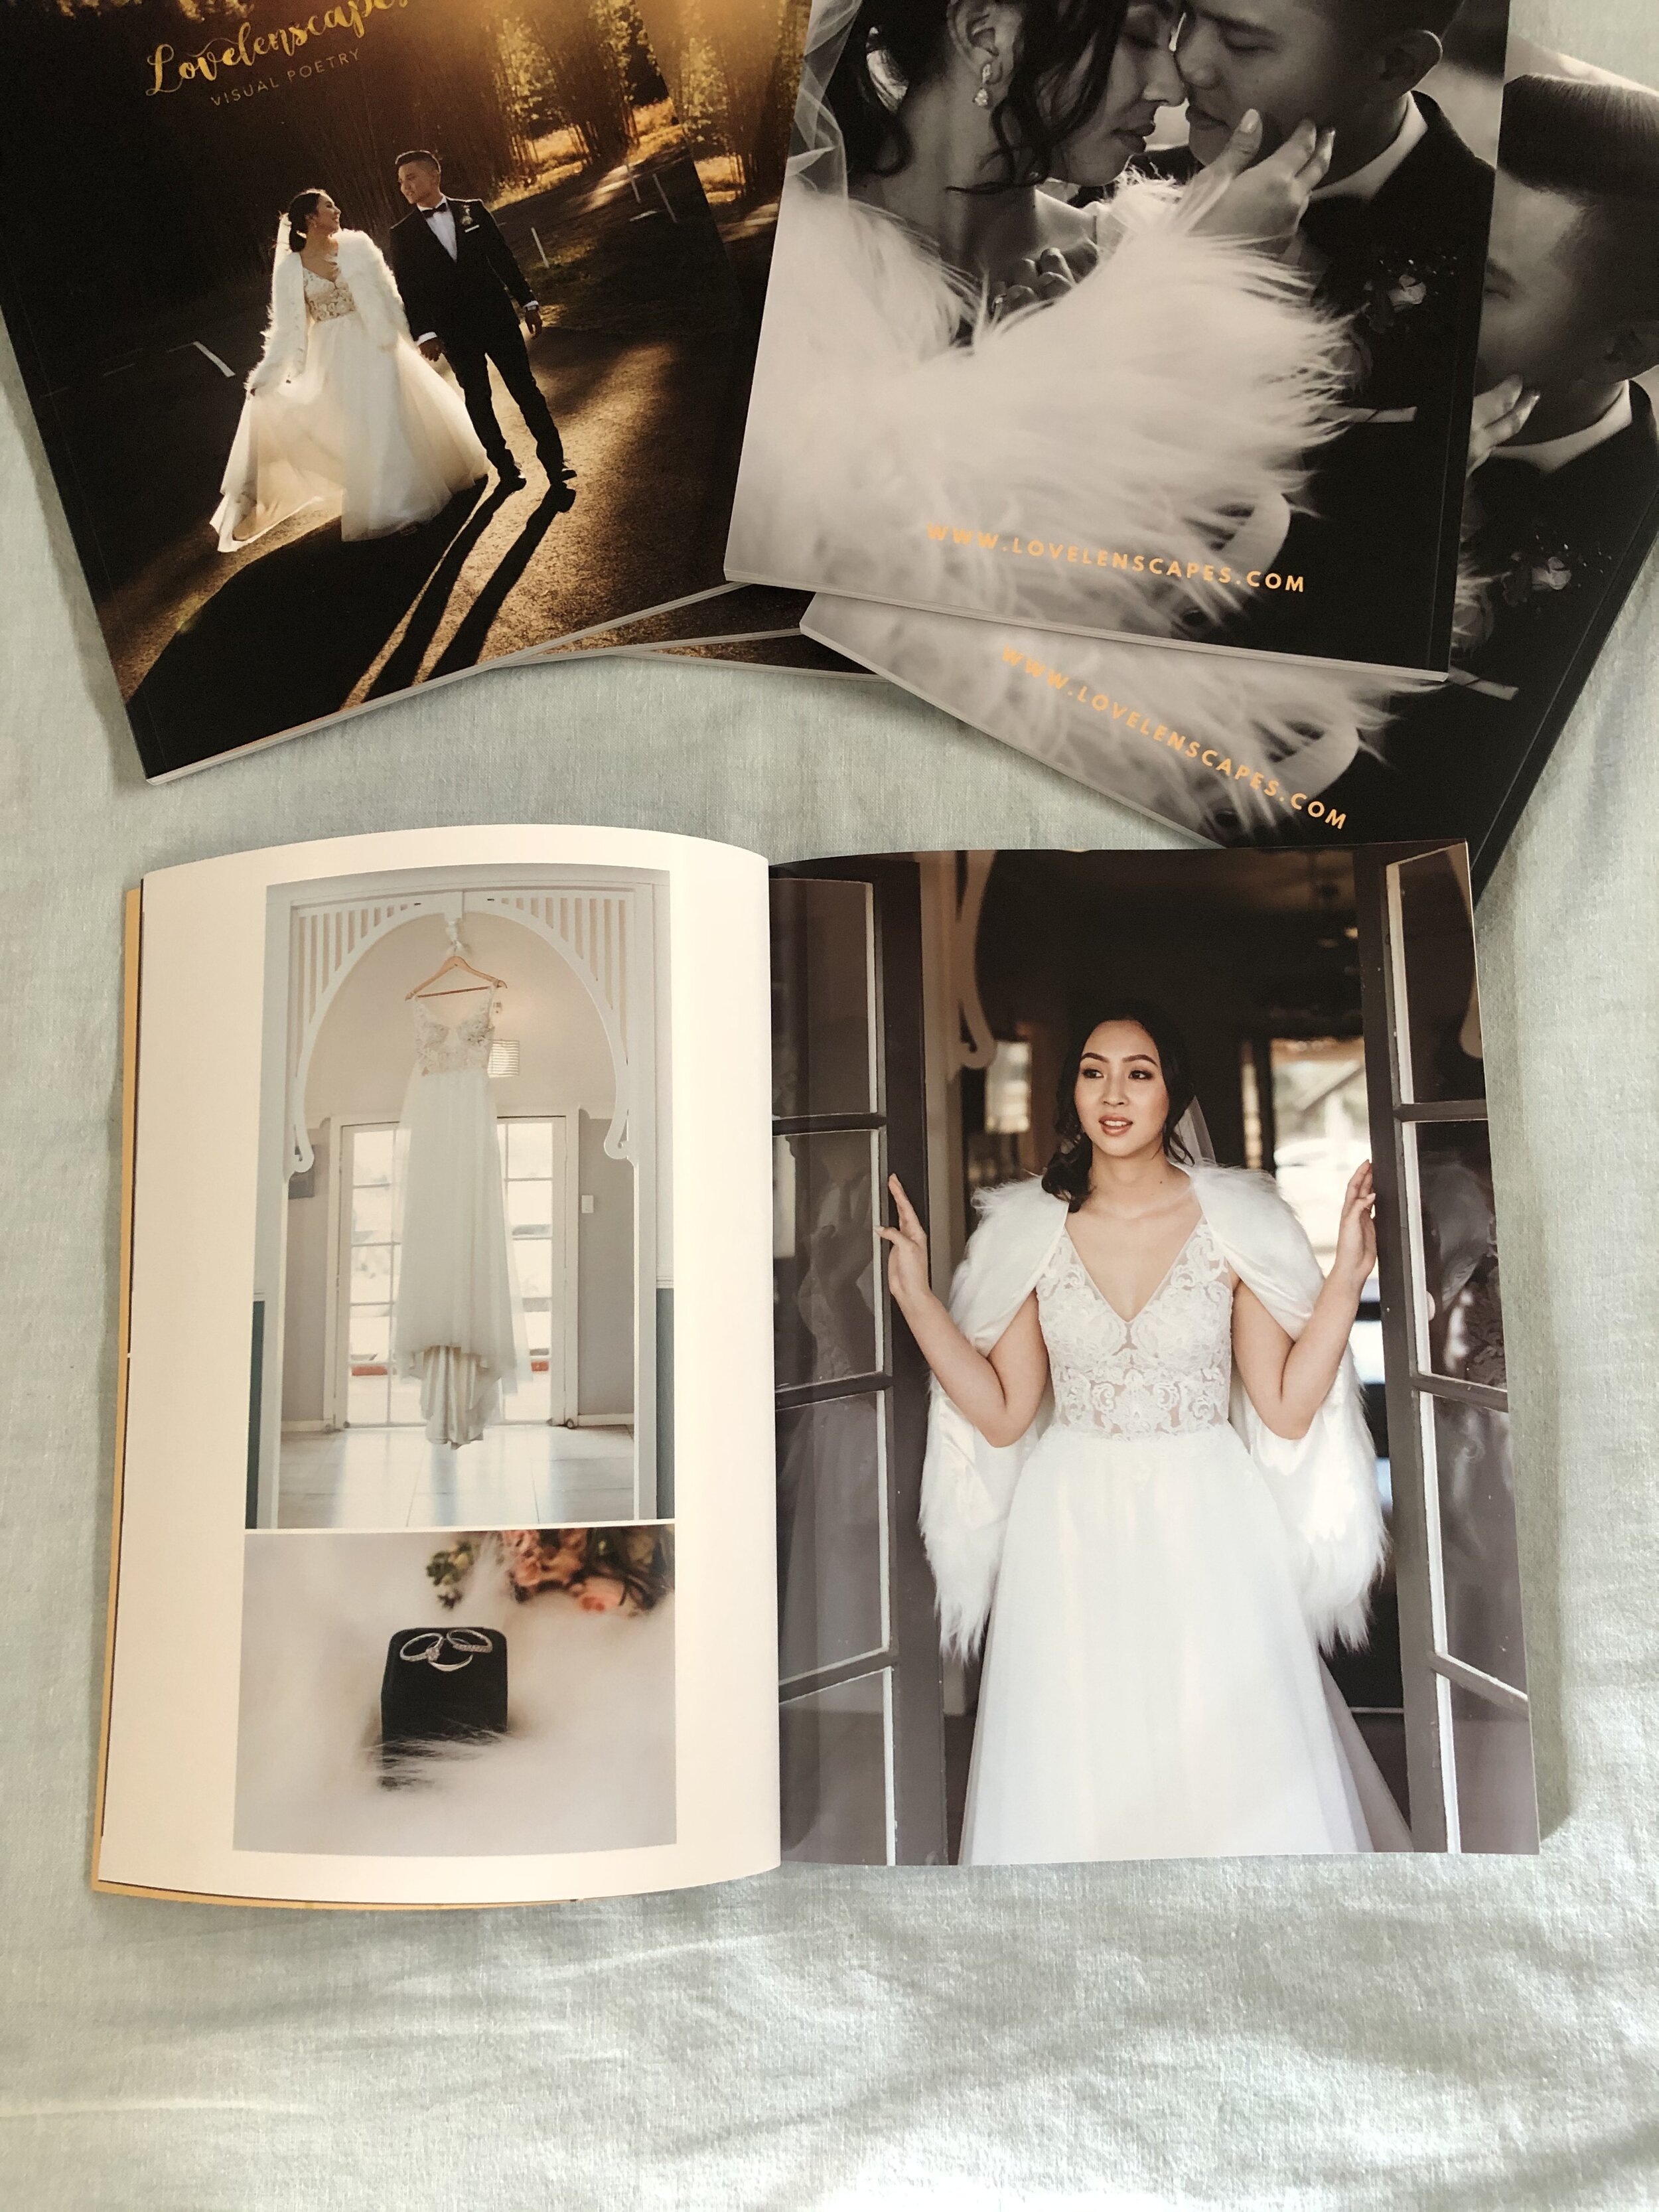 Lovelenscapes Photography • Brisbane Wedding Photographer • Luxury Wedding Magazine